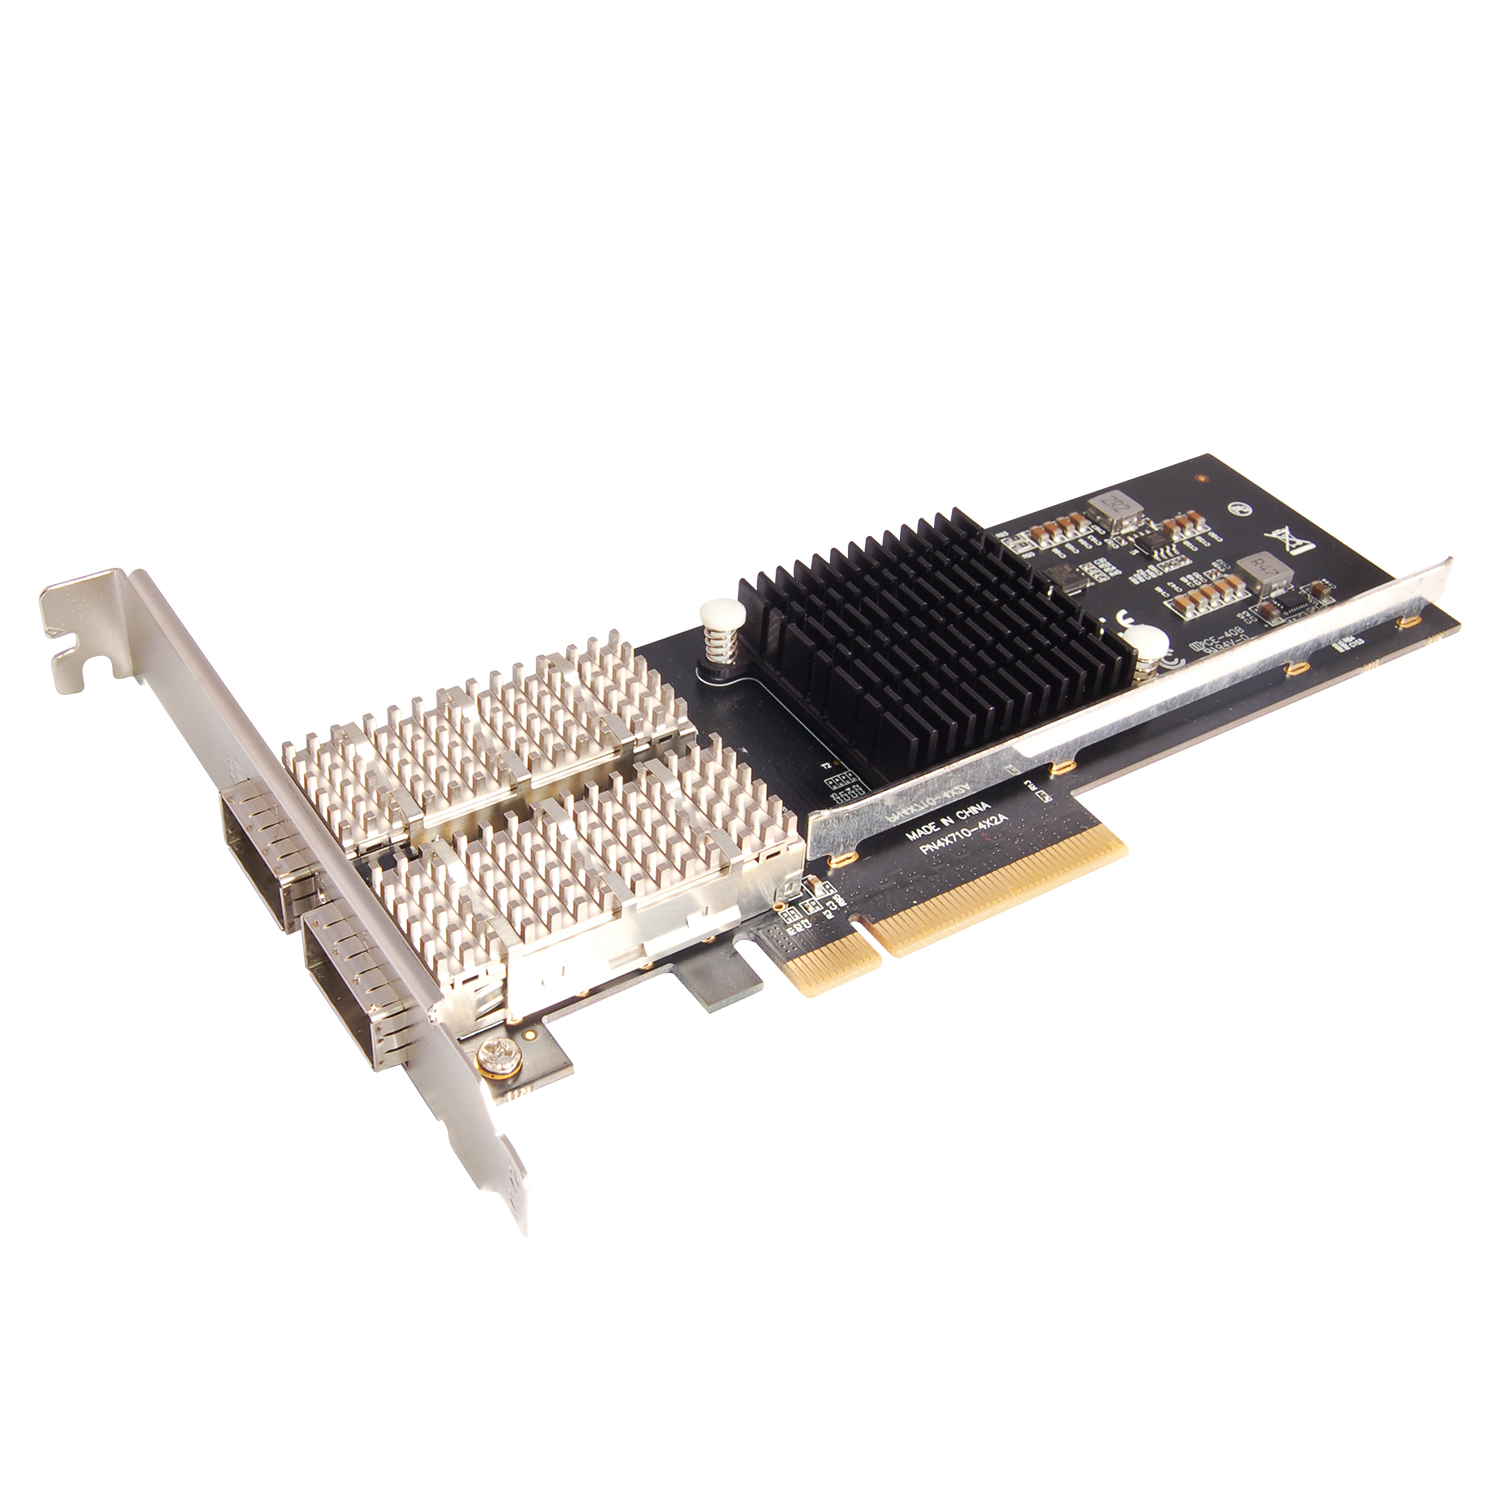 N-570 PCIe 2-Port 40G QSFP+ Netword Card